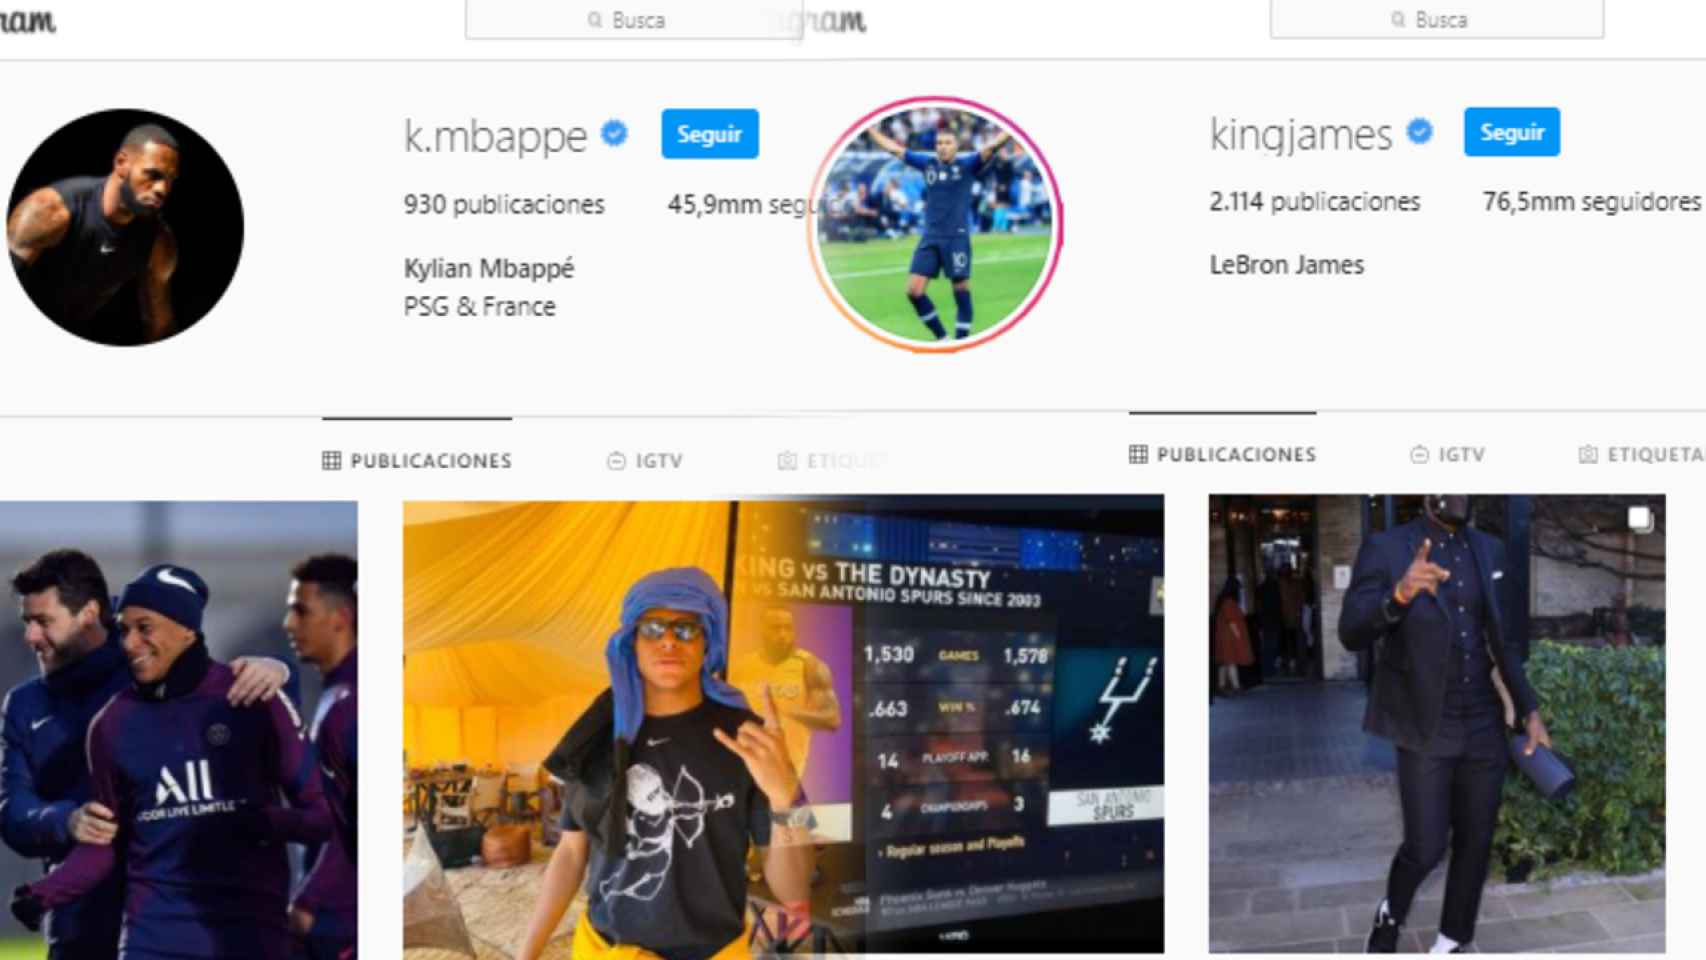 Las cuentas de Instagram de LeBron James y Kylian Mbappé